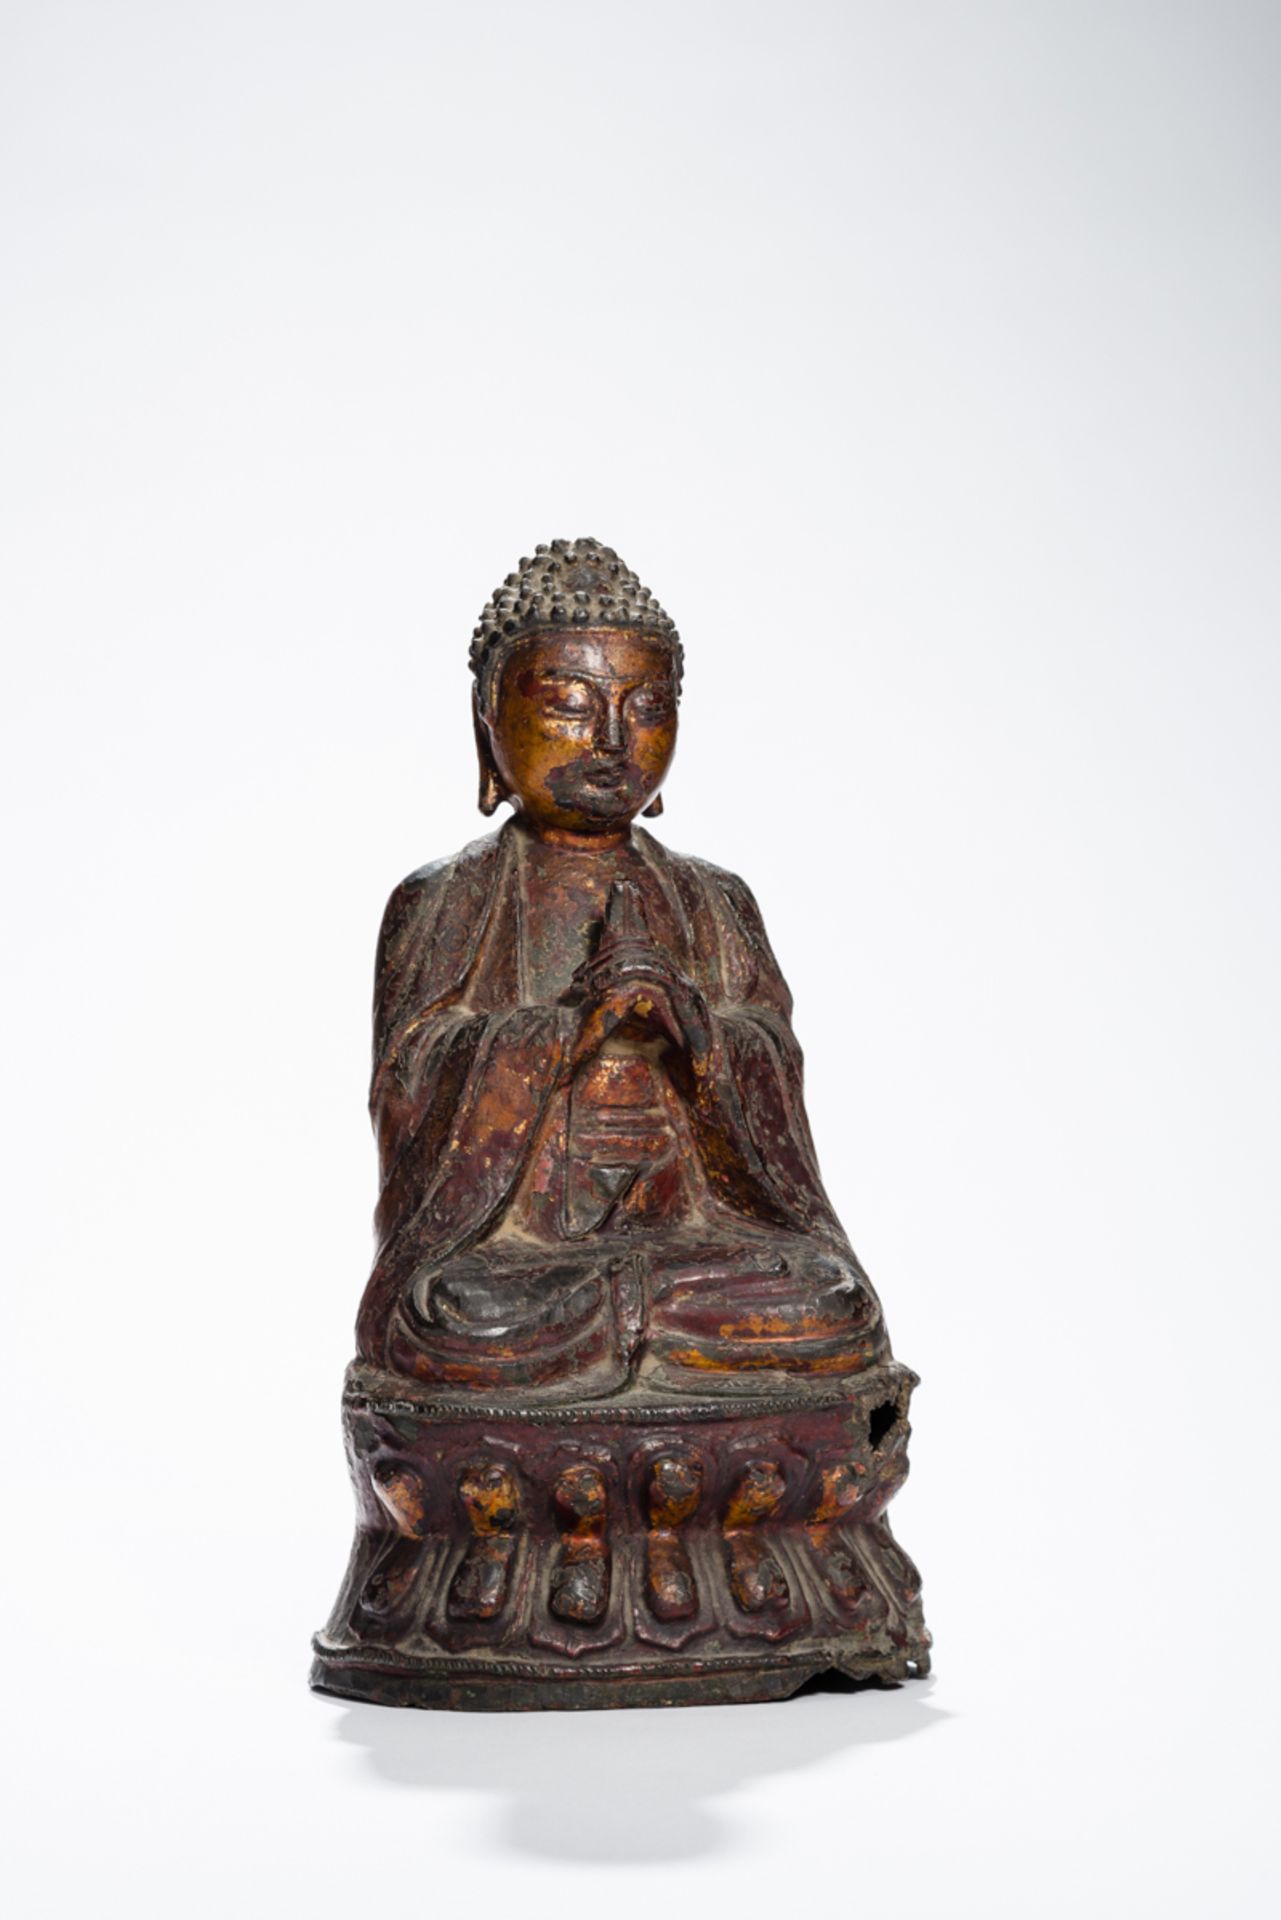 BUDDHA MIT DEm SELTENEN GESTUS DES SALBENSBronze mit Vergoldung. China, ca. 17. Jh.Buddha - Bild 3 aus 8